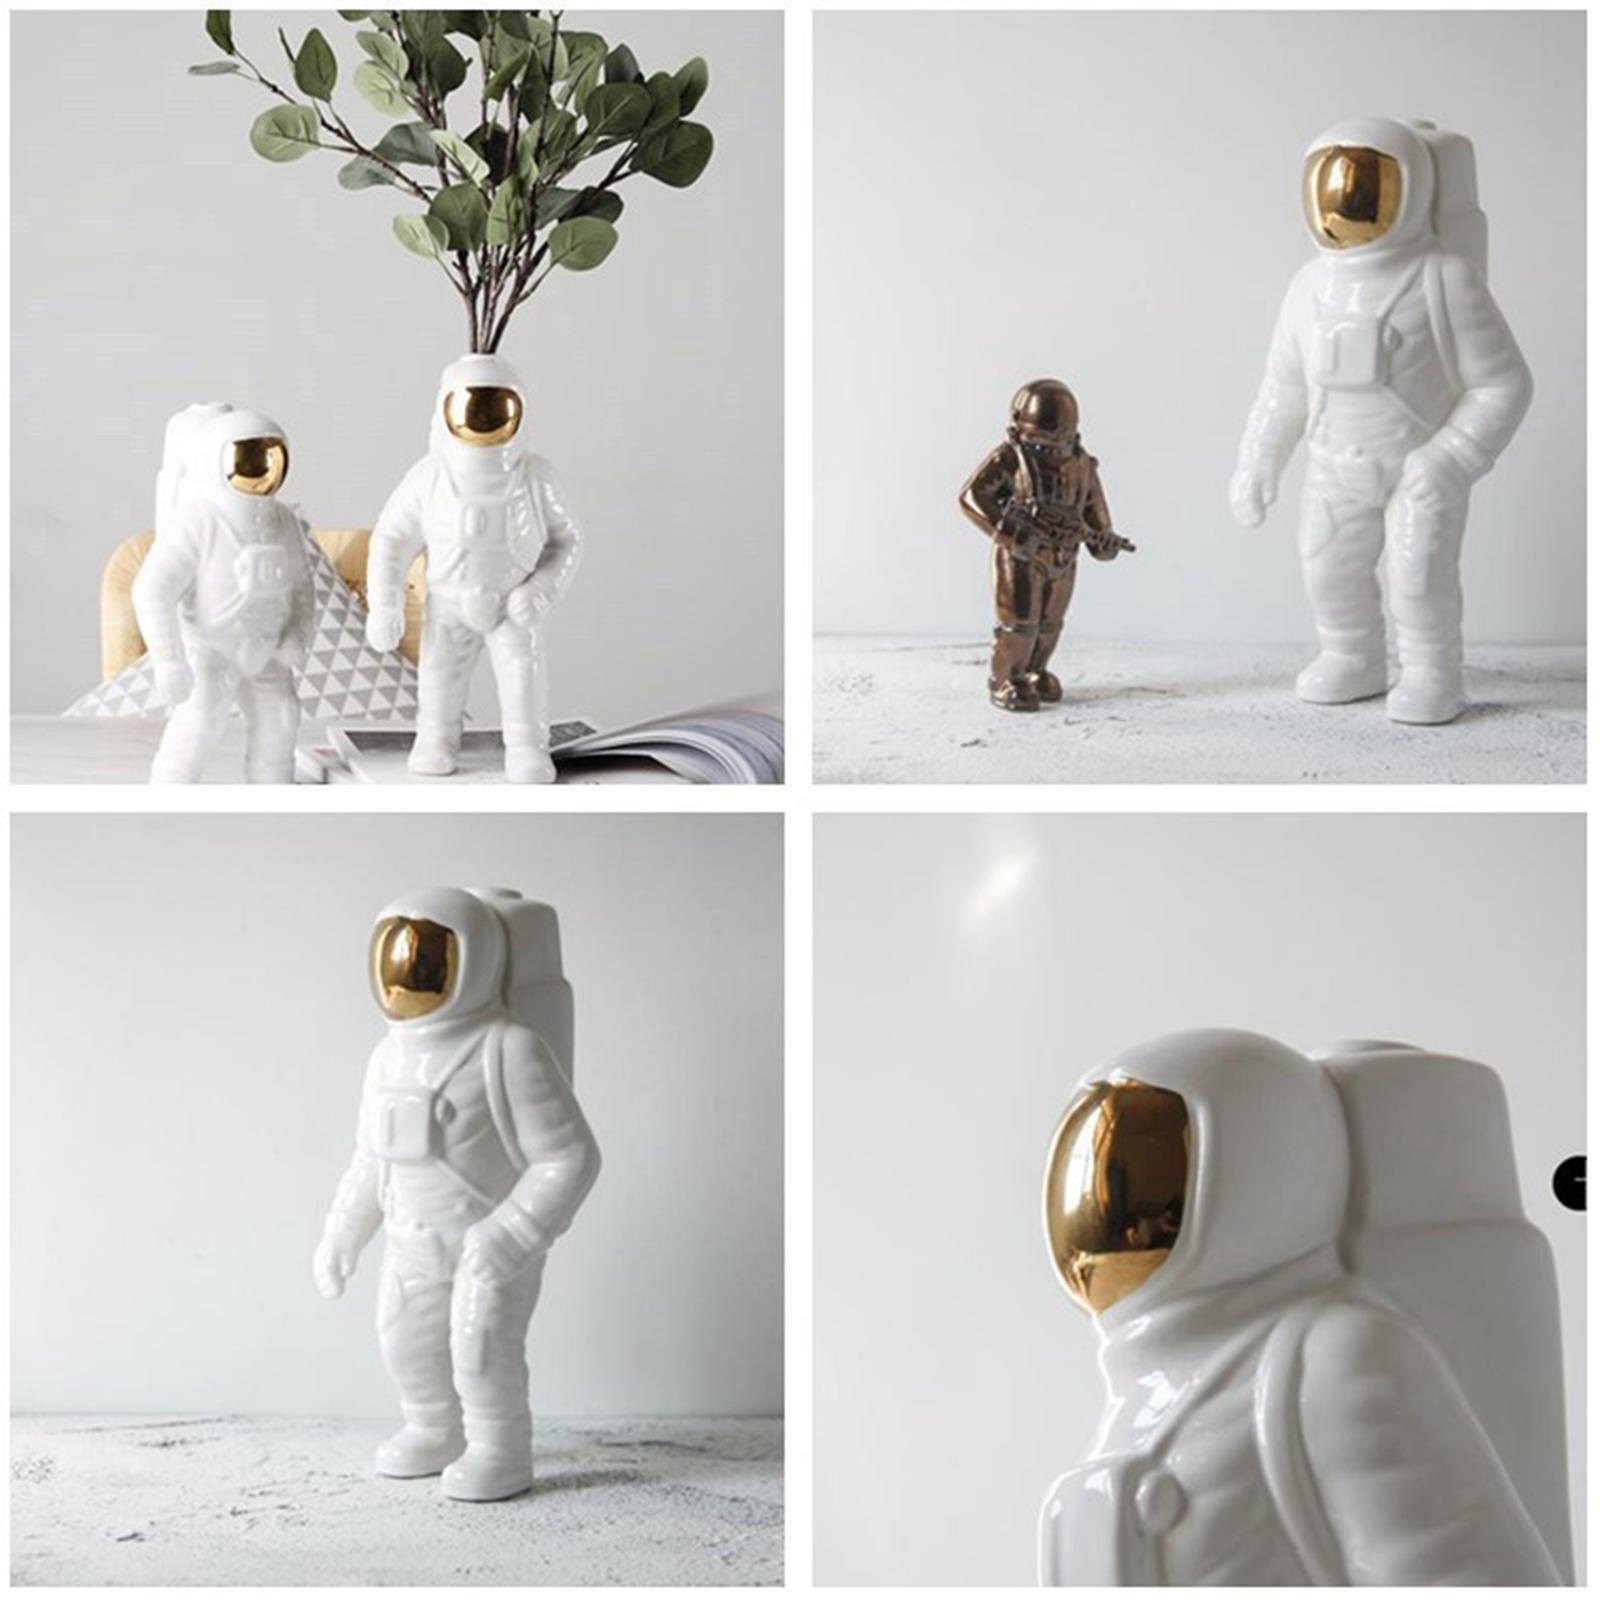 3x Ceramic Space Man Figurine Sculpture Astronaut Cosmonaut Statue Art